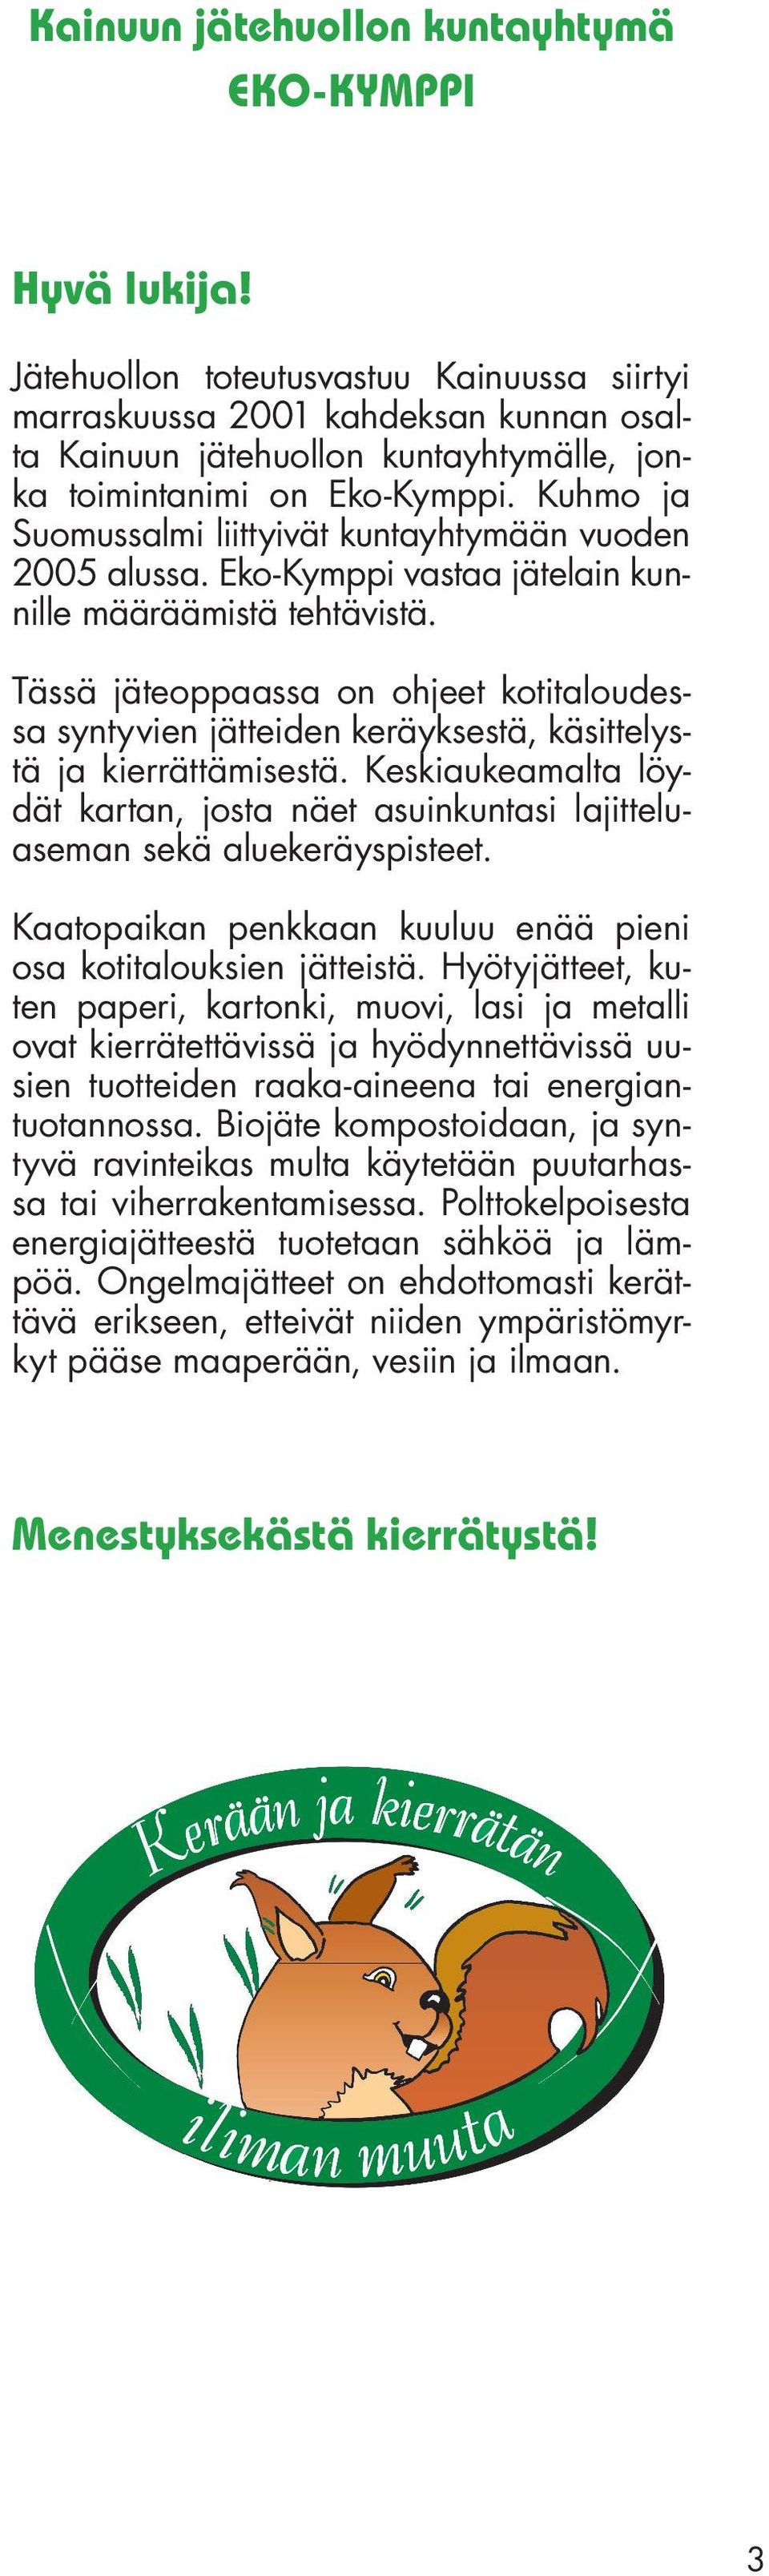 Kuhmo ja Suomussalmi liittyivät kuntayhtymään vuoden 2005 alussa. Eko-Kymppi vastaa jätelain kunnille määräämistä tehtävistä.